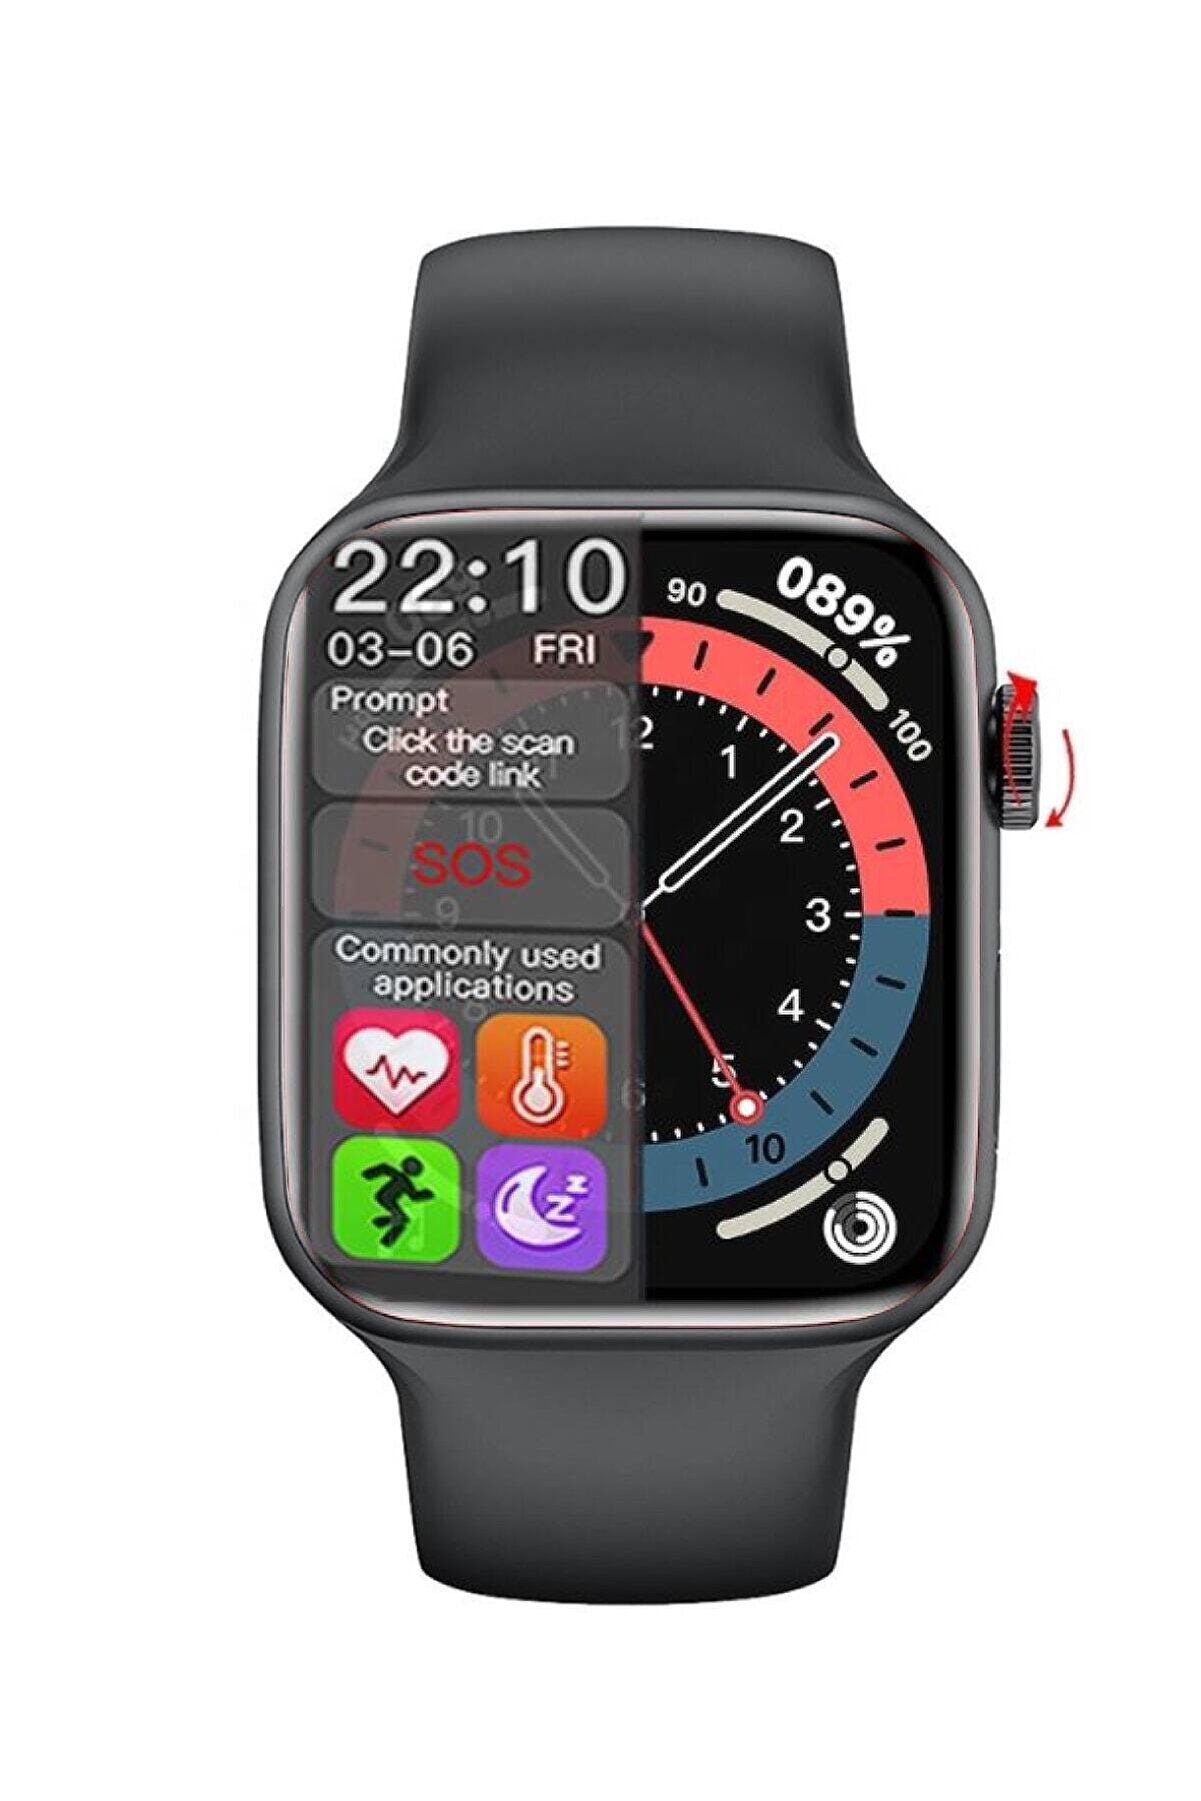 Carmenta Watch X7 Multifonksiyon Akıllı Saat - Bilek Sensörlü , Ios Ve Android Uyumlu - 2021